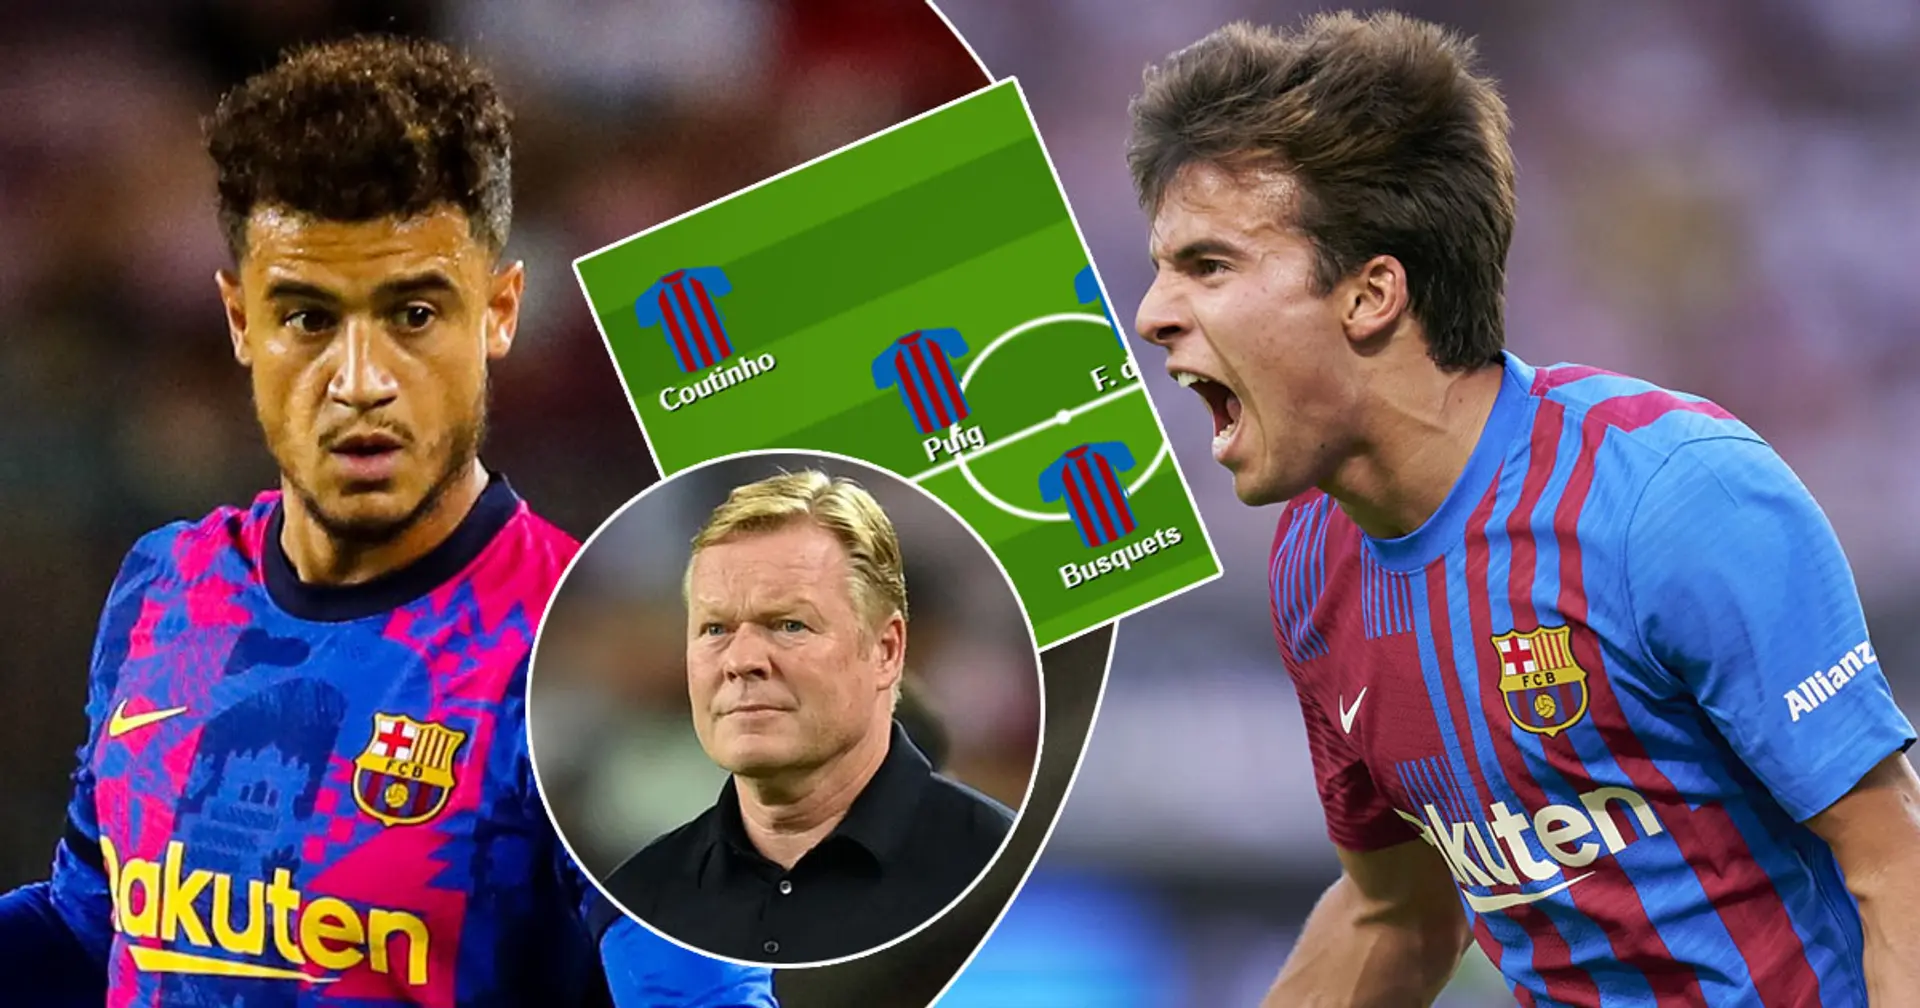 ¿Oportunidad para Coutinho y Puig? Elige tu XI favorito del Barça para el choque ante el Granada entre 3 opciones